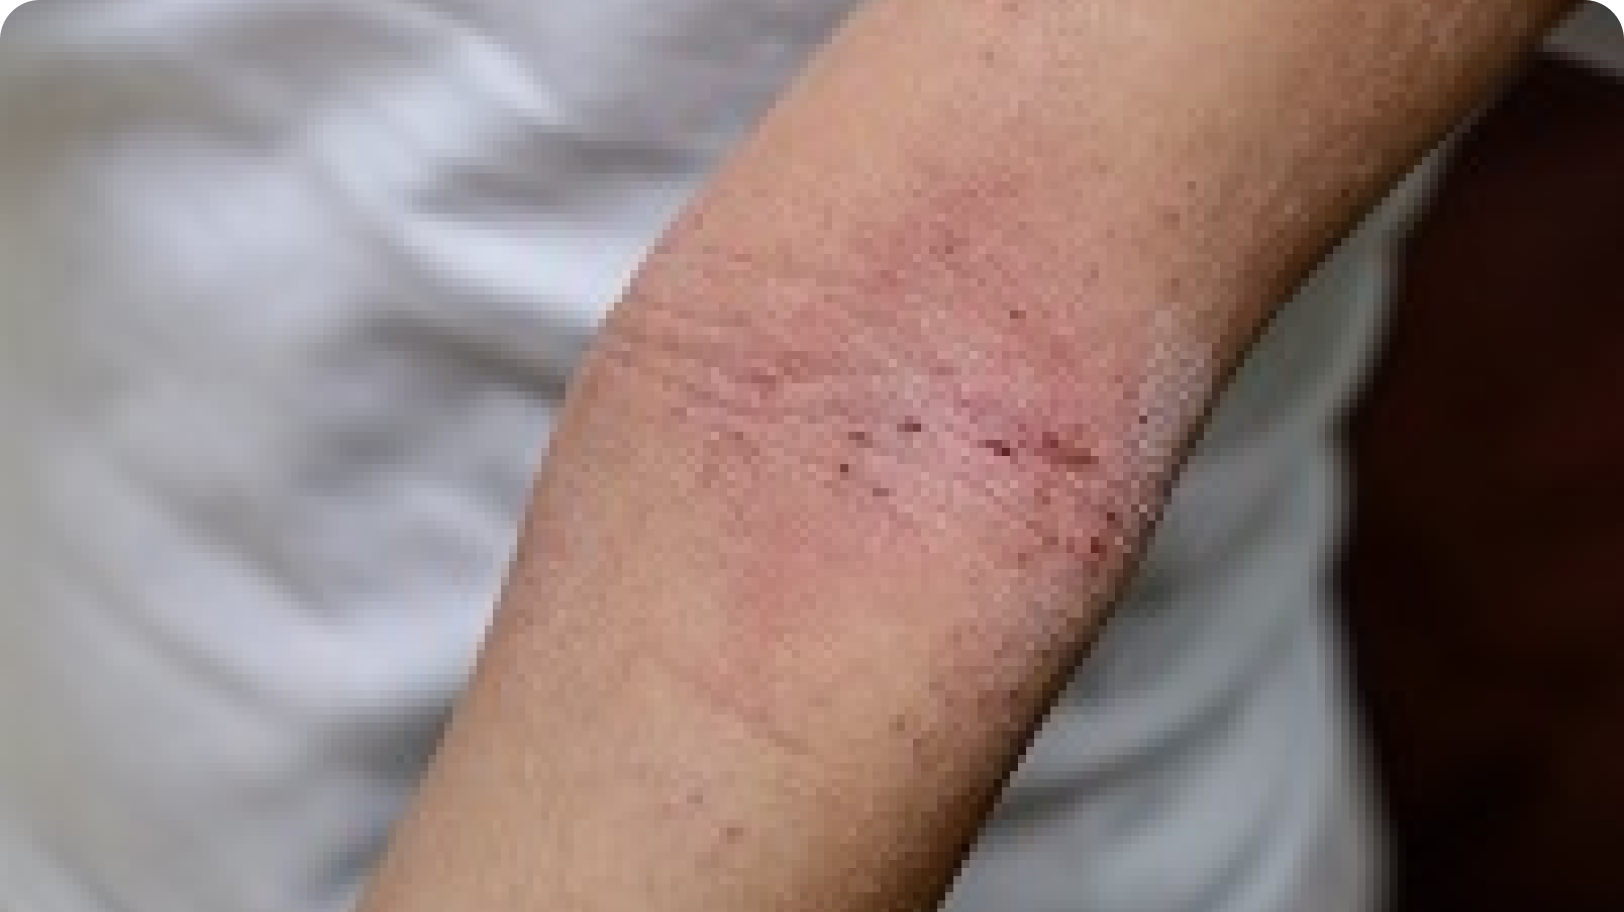 Examples of eczema